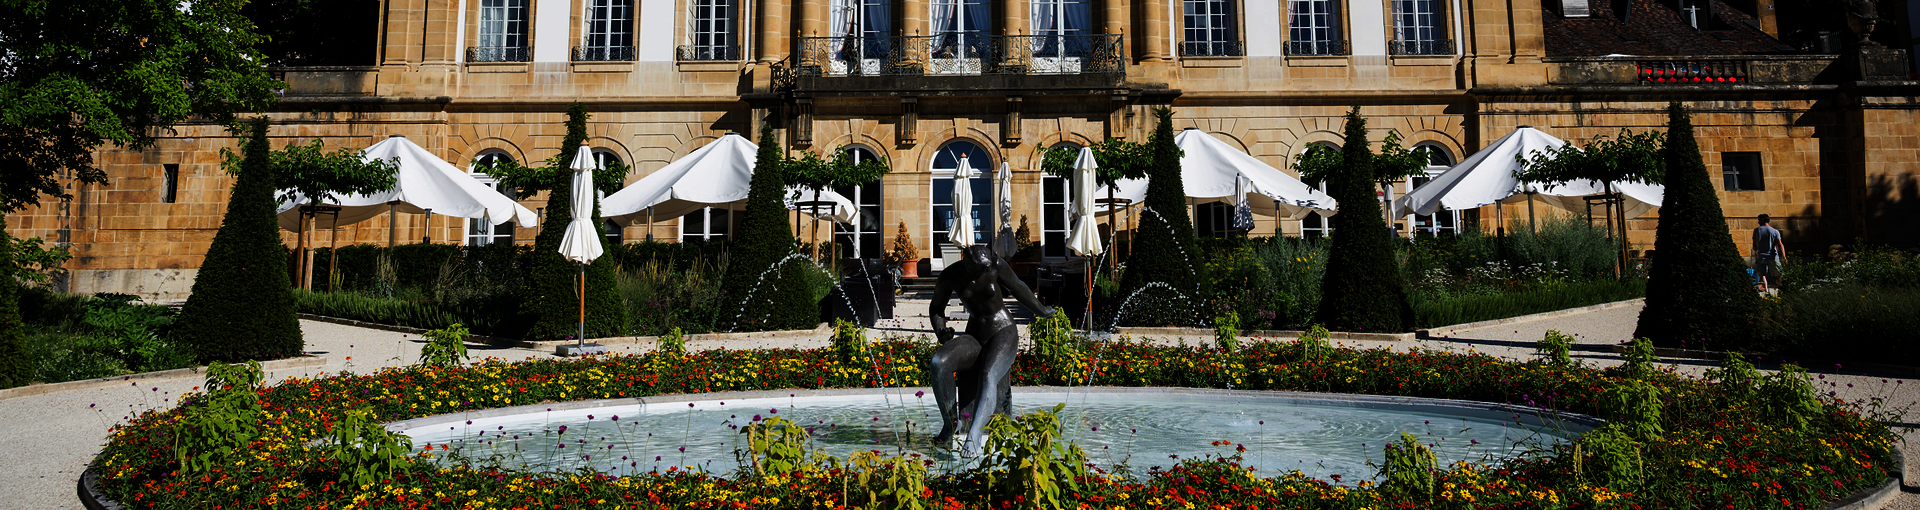 L'Hôtel du Peyrou fait partie des édifices remarquables de la ville, avec son jardin à la française